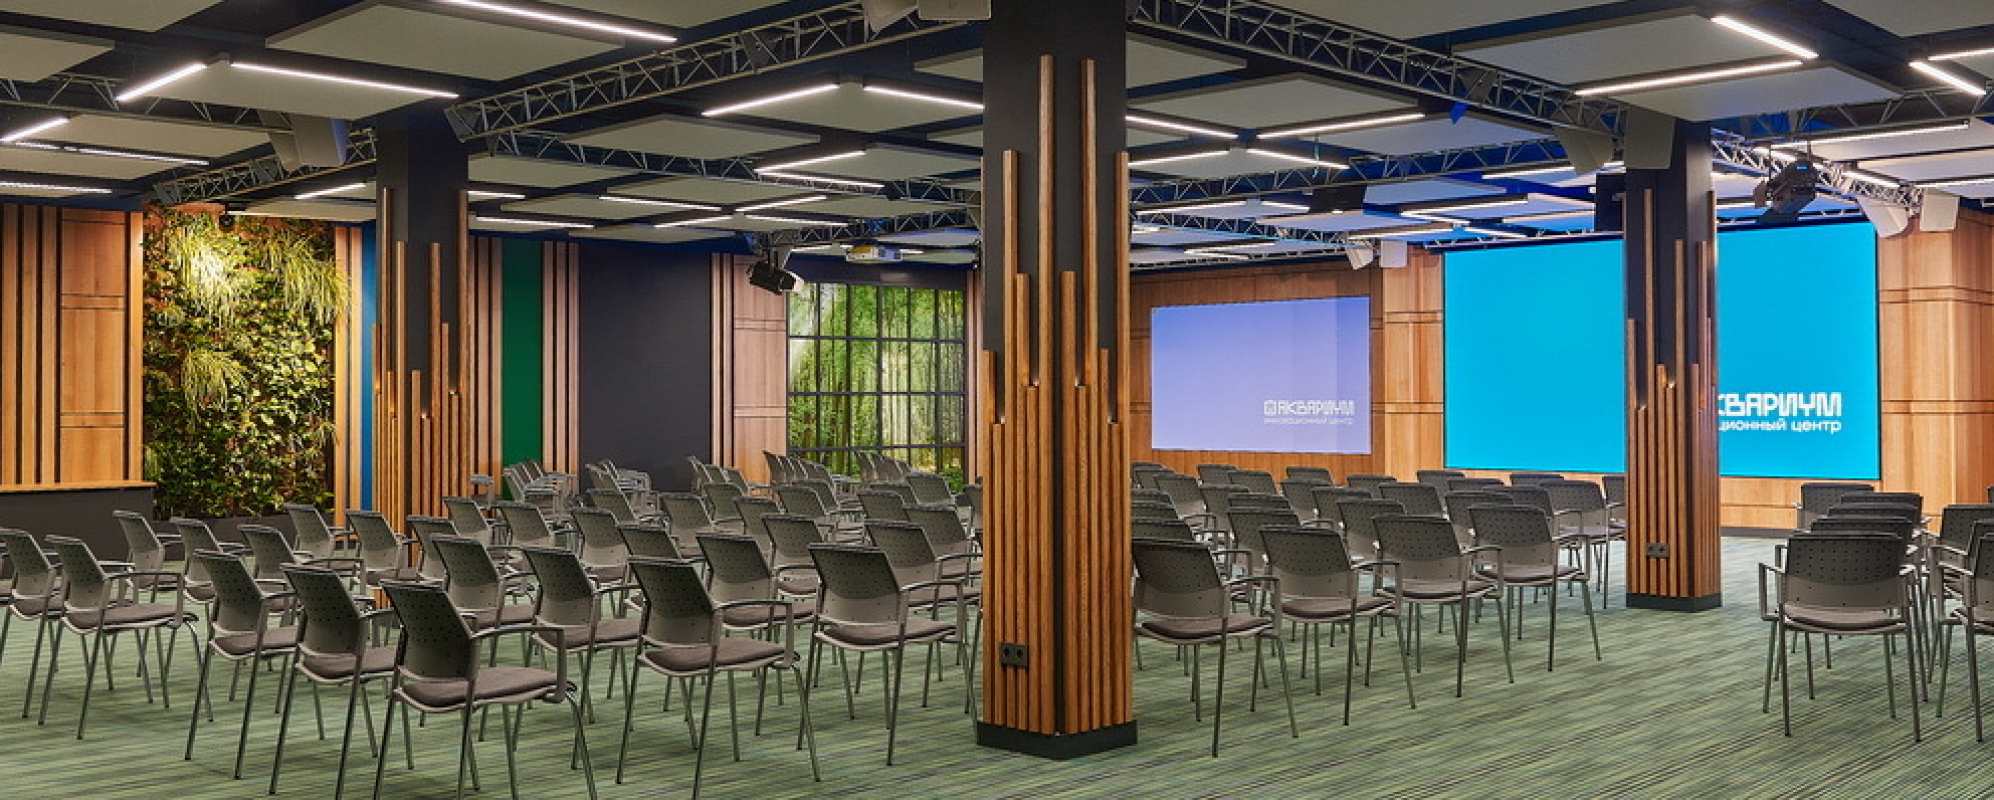 Фотографии конференц-зала Большой зал инновационного центра Аквариум